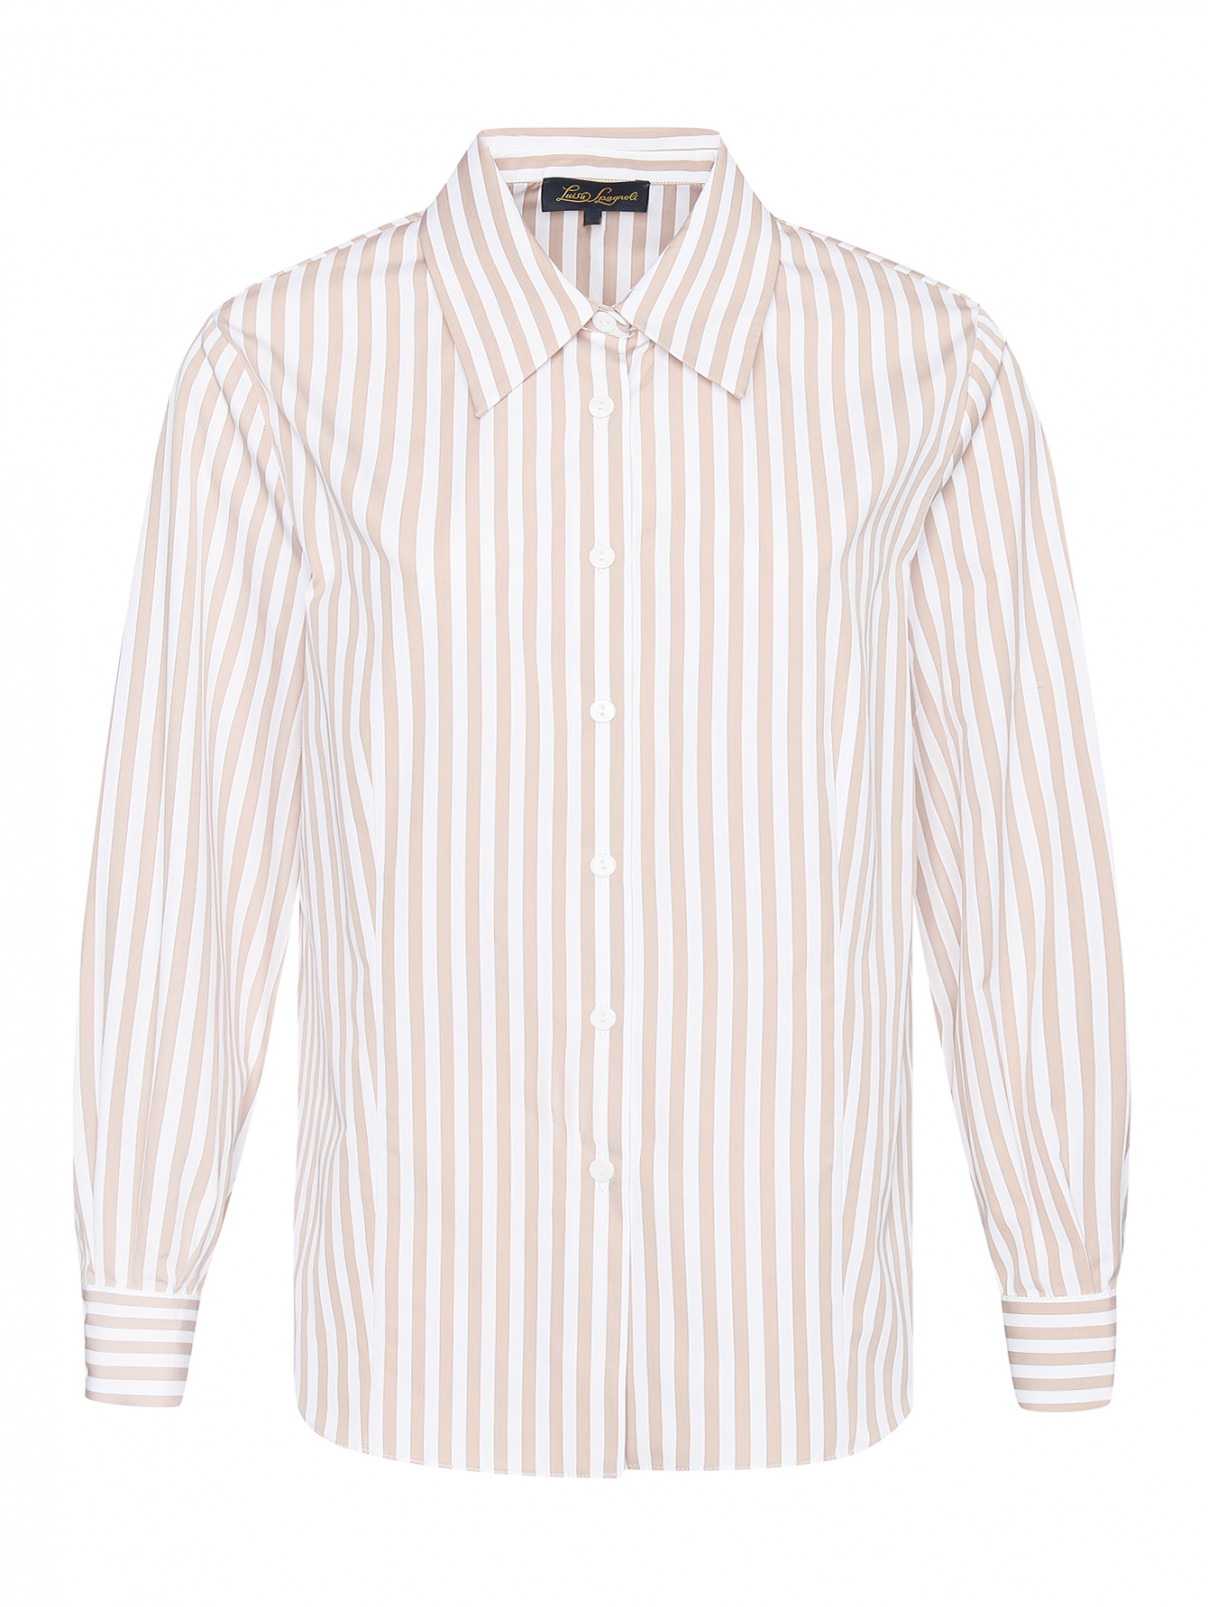 Хлопковая рубашка в полоску Luisa Spagnoli  –  Общий вид  – Цвет:  Узор